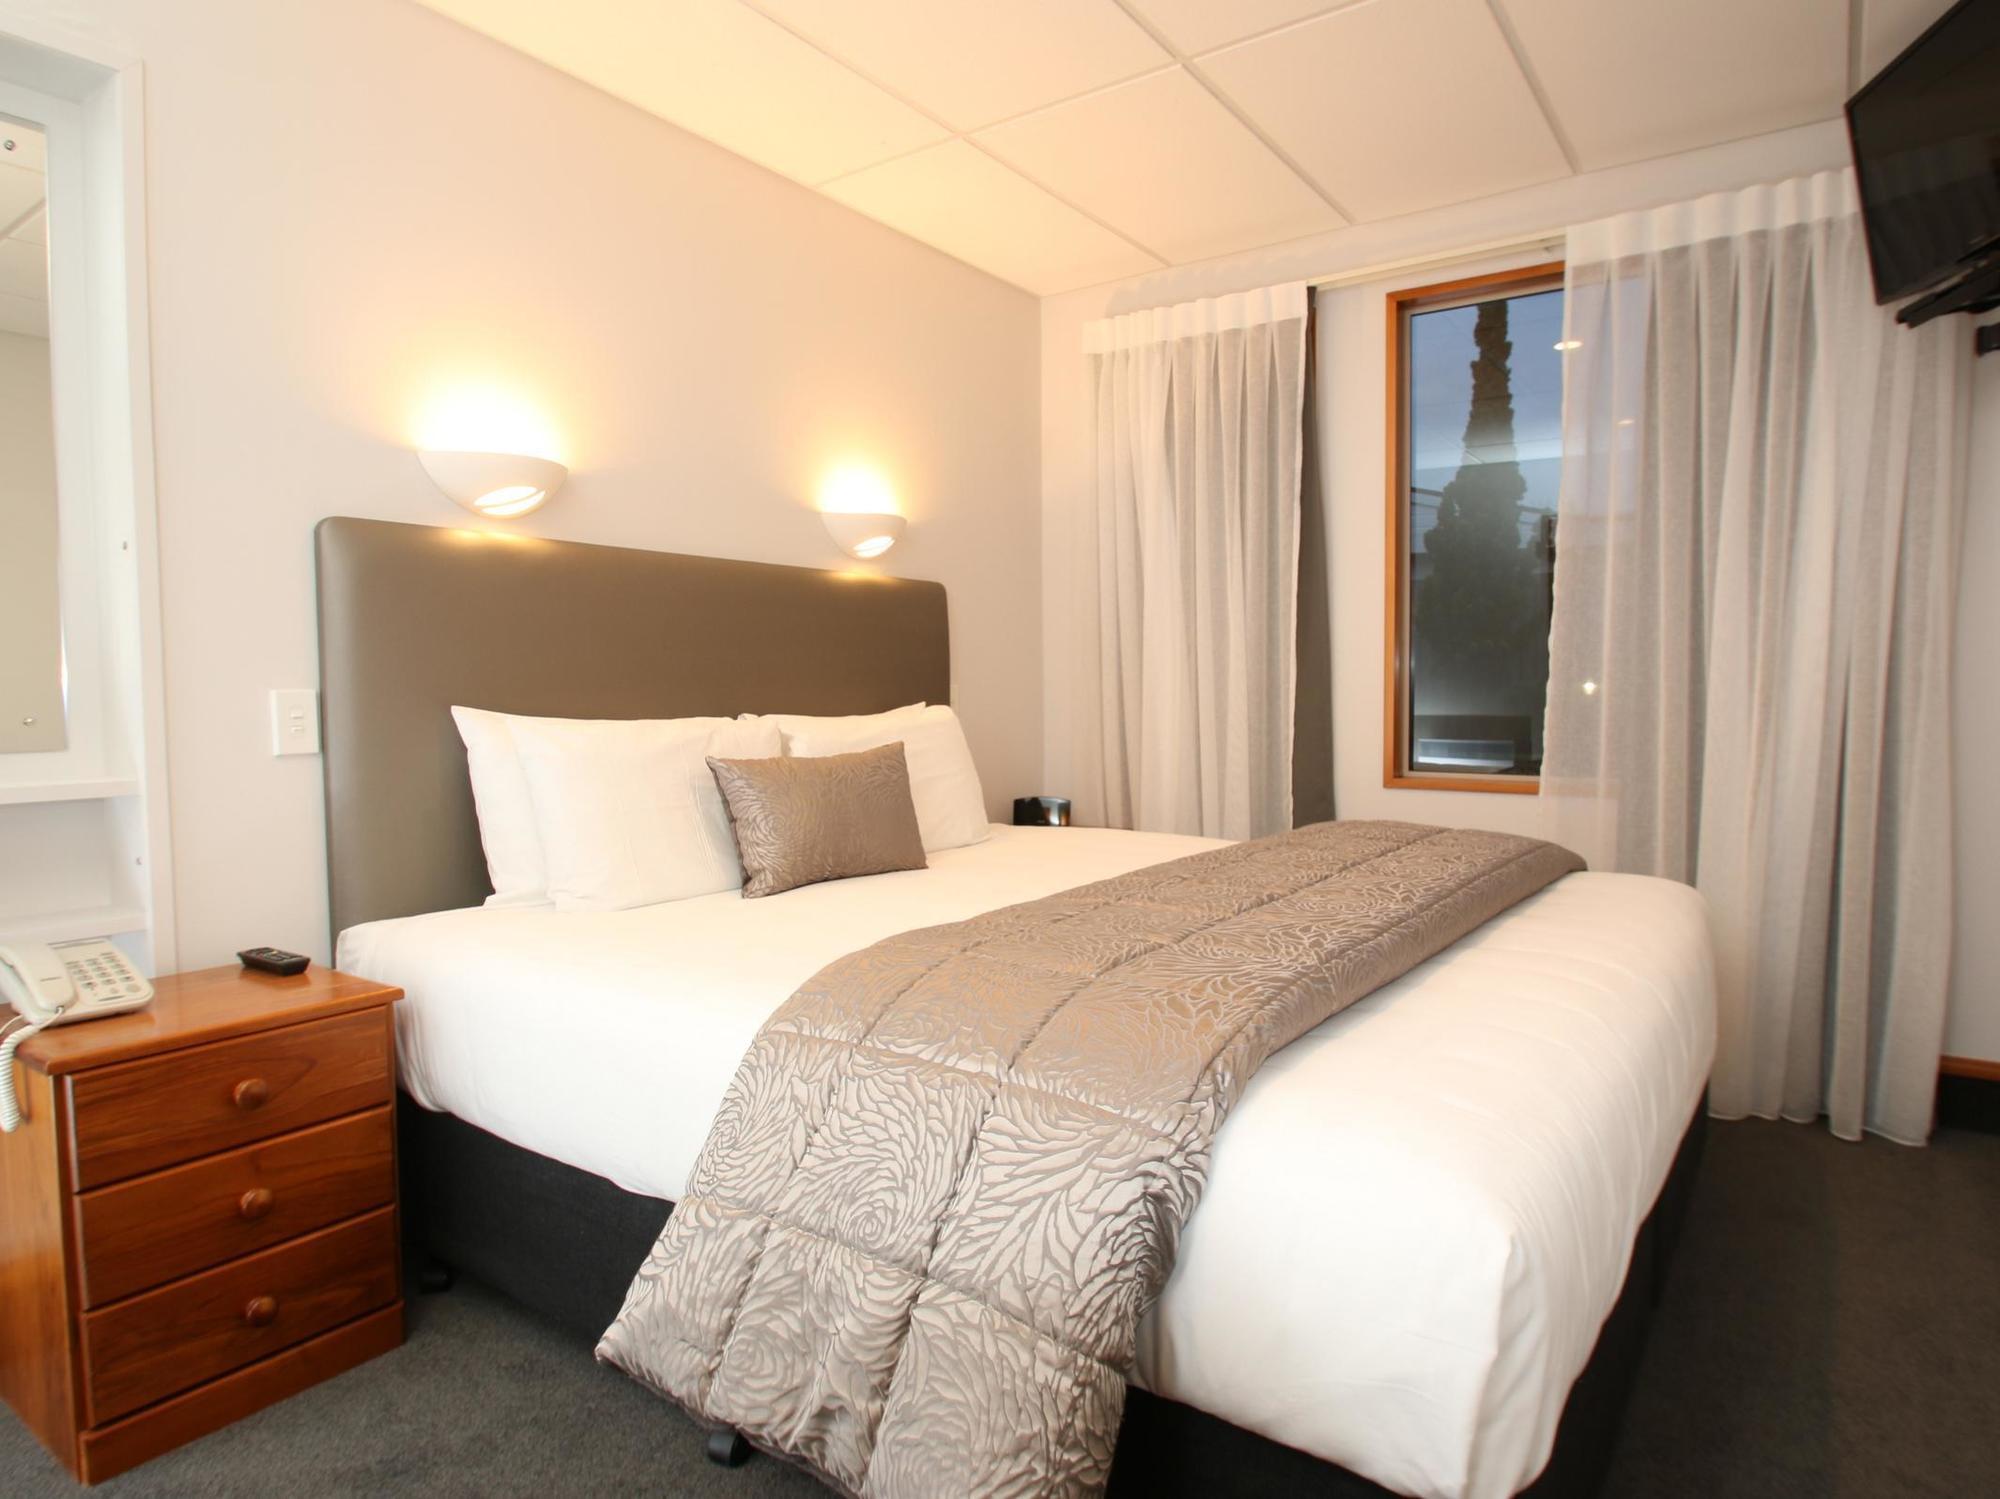 Amross Motel Dunedin Exterior foto